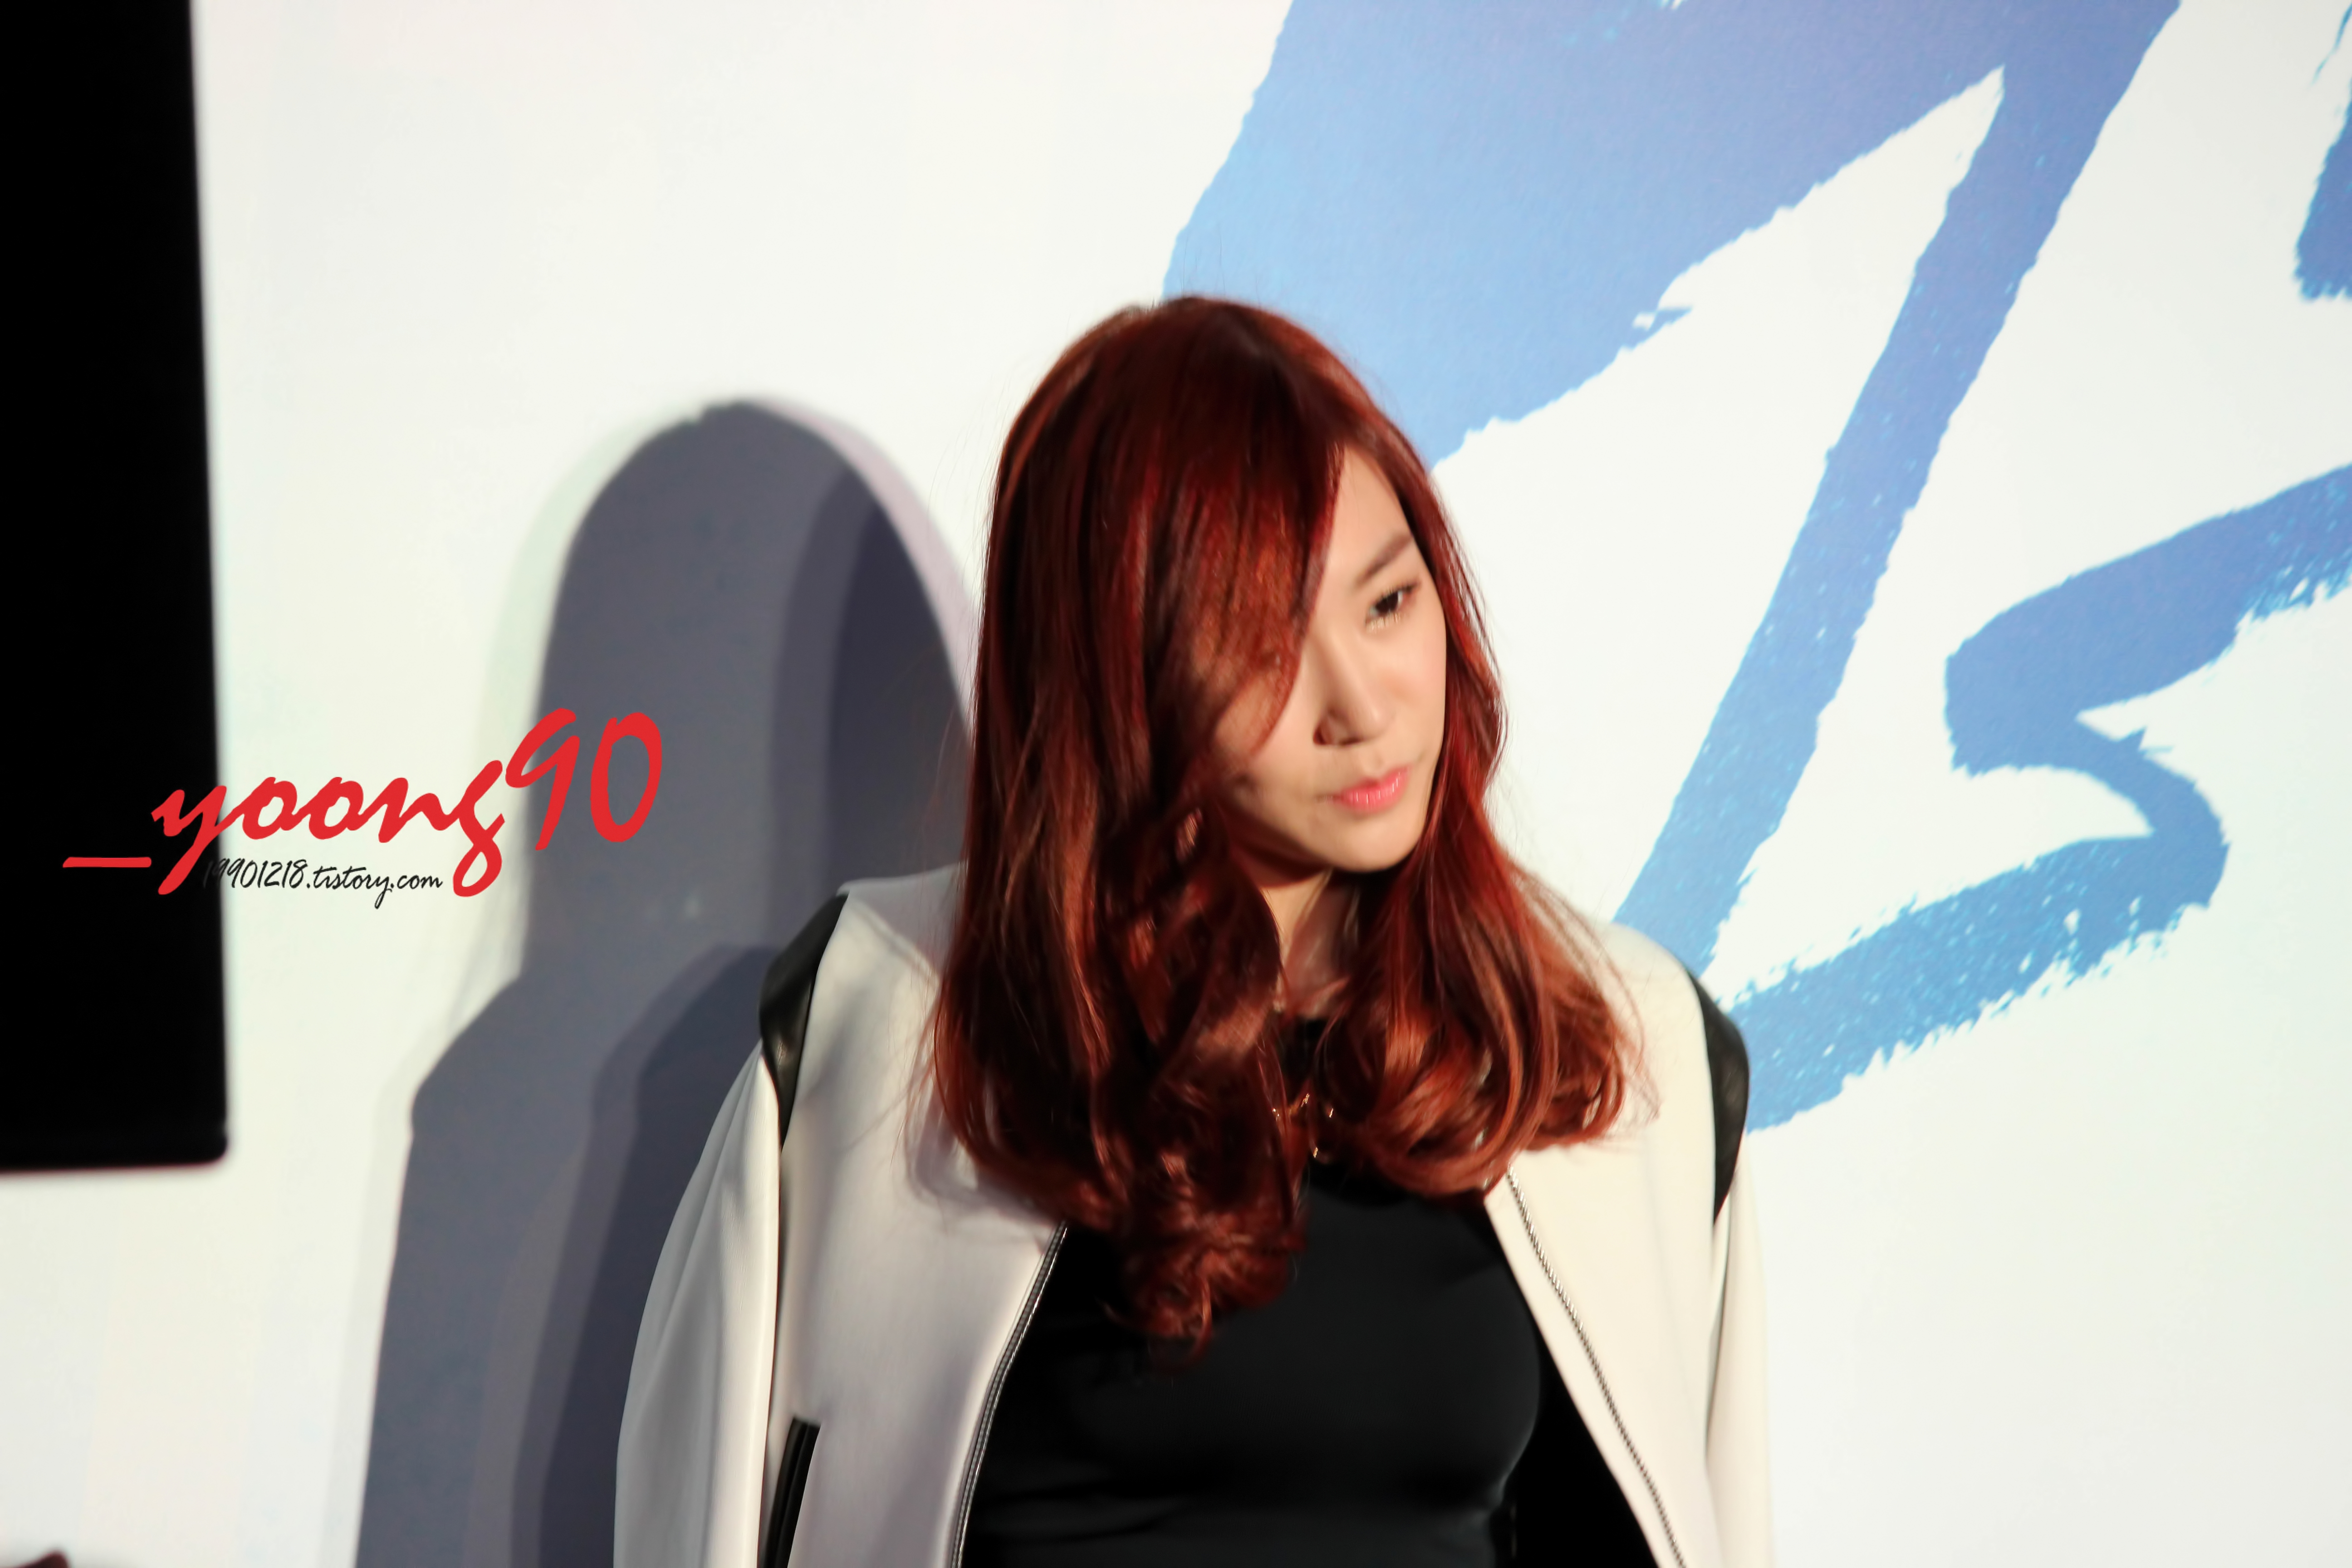 [PIC][25-10-2013]Yuri và dàn diễn viên "No Breathing" xuất hiện tại buổi công chiếu VIP vào tối nay + Tất cả các thành viên SNSD đến ủng hộ cho cô - Page 3 2760504A526D1C9525B502